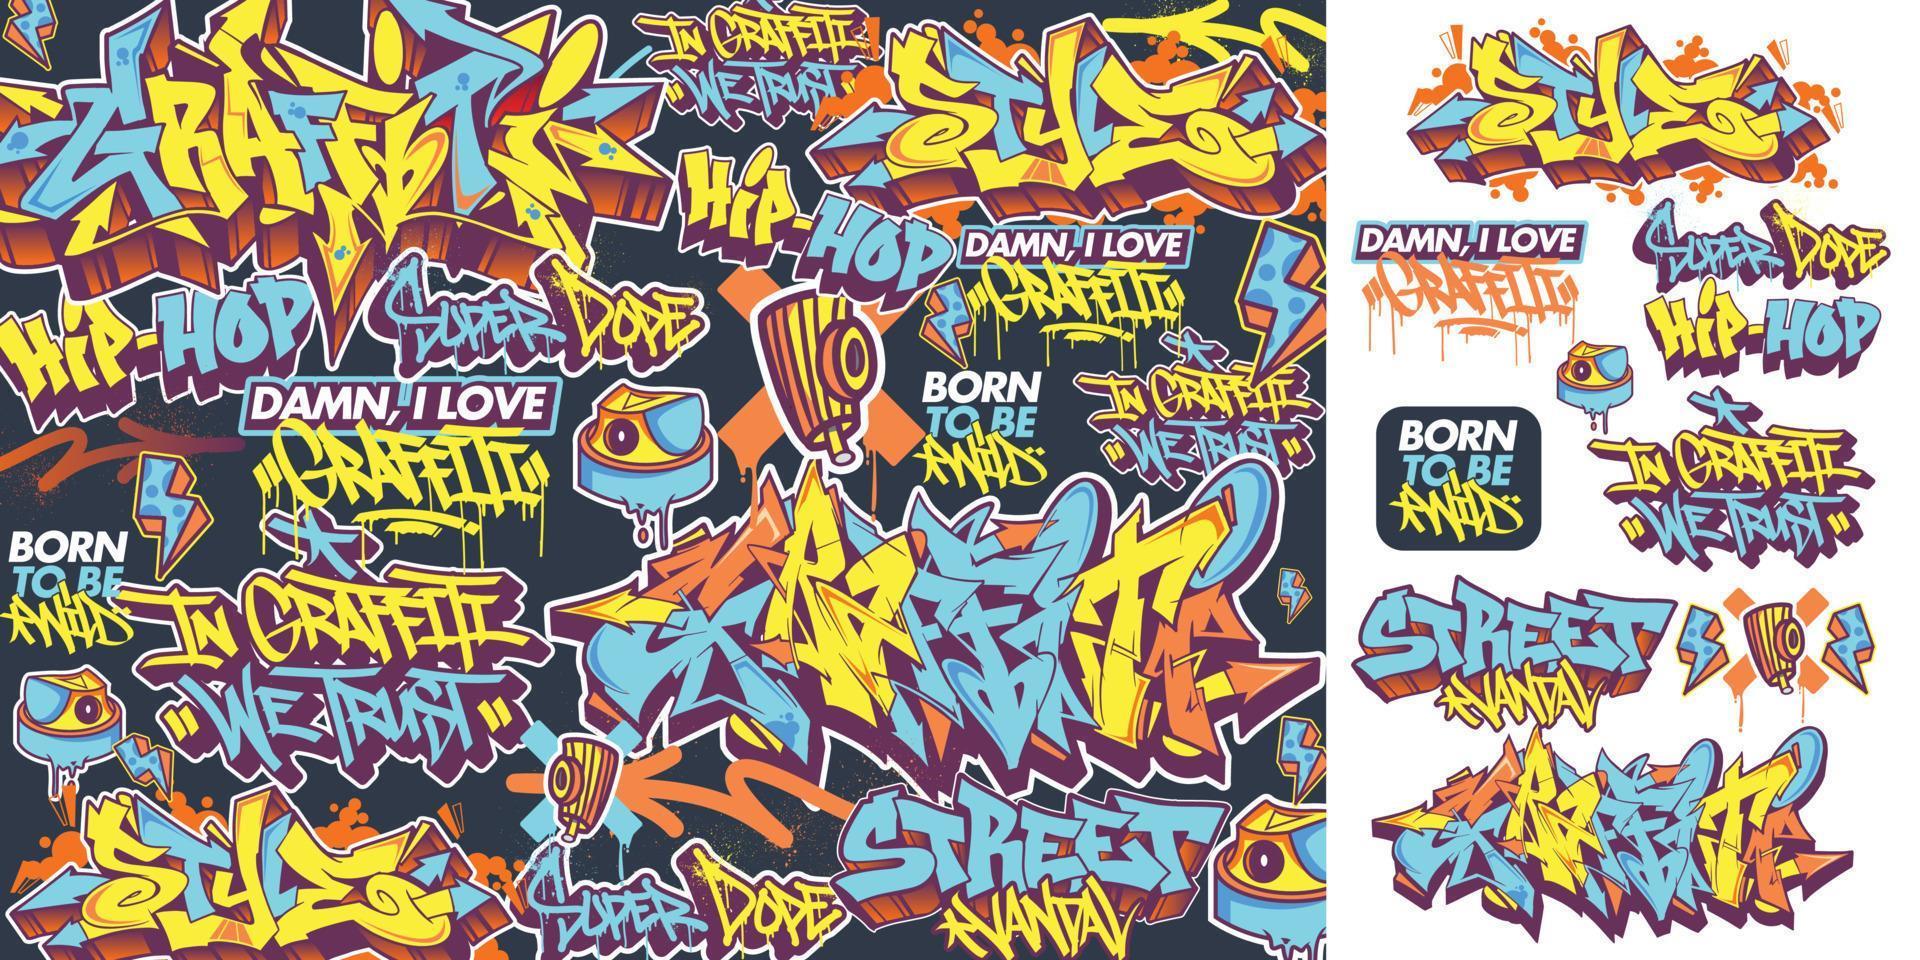 en uppsättning av färgrik eller vibrerande graffiti konst klistermärken. gata konst tema, urban stil för t-shirt design, graffiti design för tapet, vägg konst eller skriva ut konst mönster. vektor